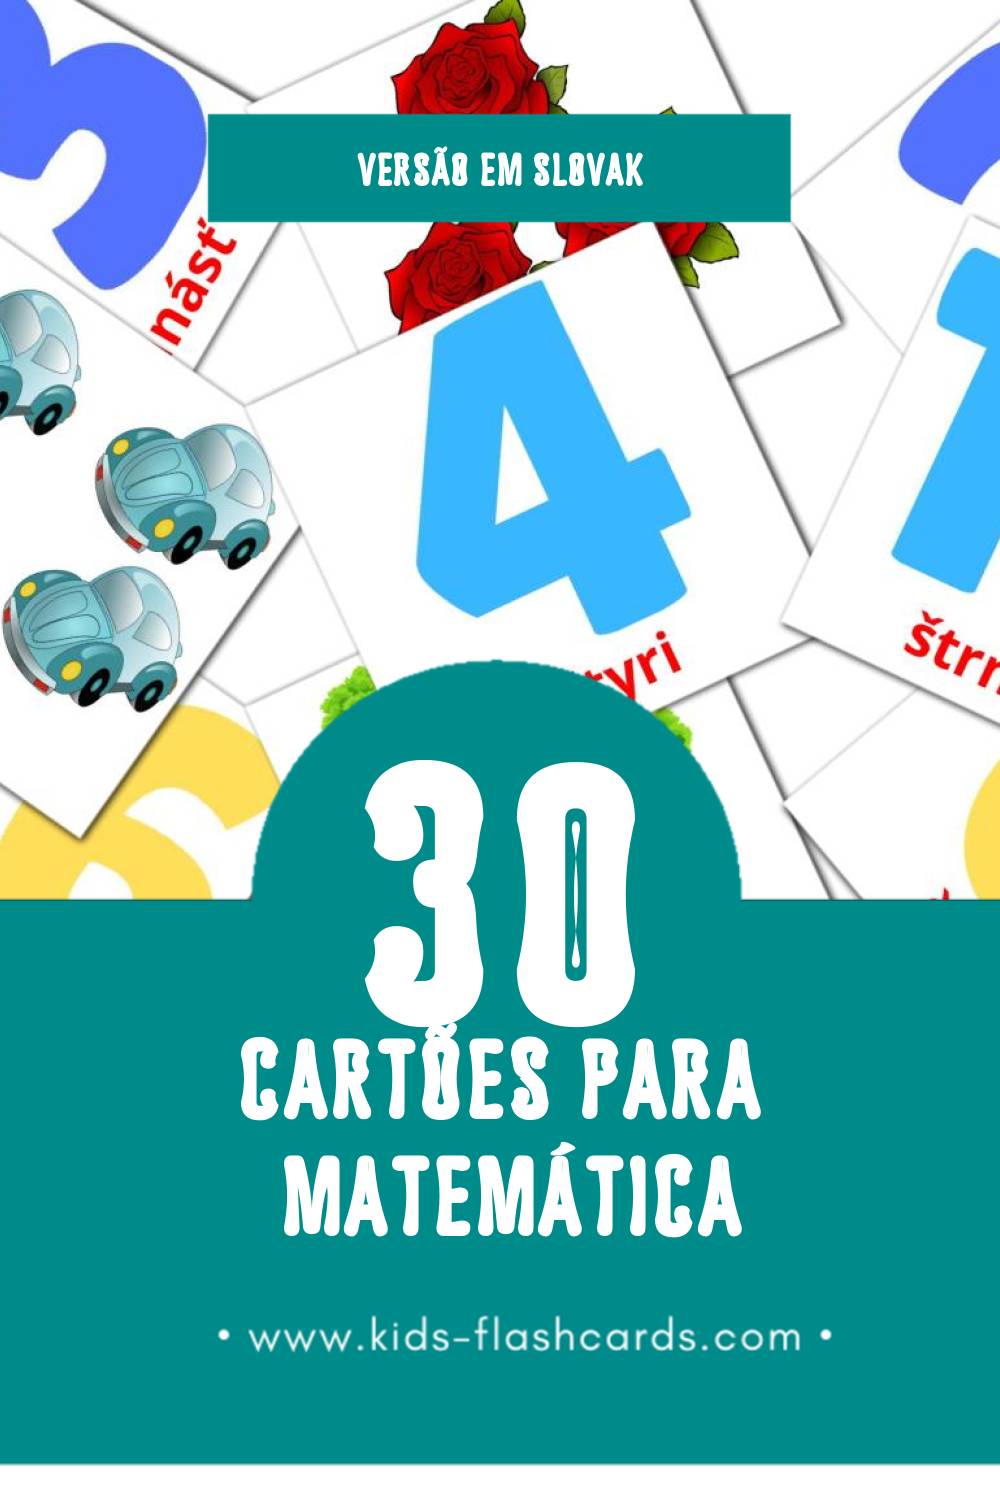 Flashcards de Matematika Visuais para Toddlers (30 cartões em Slovak)